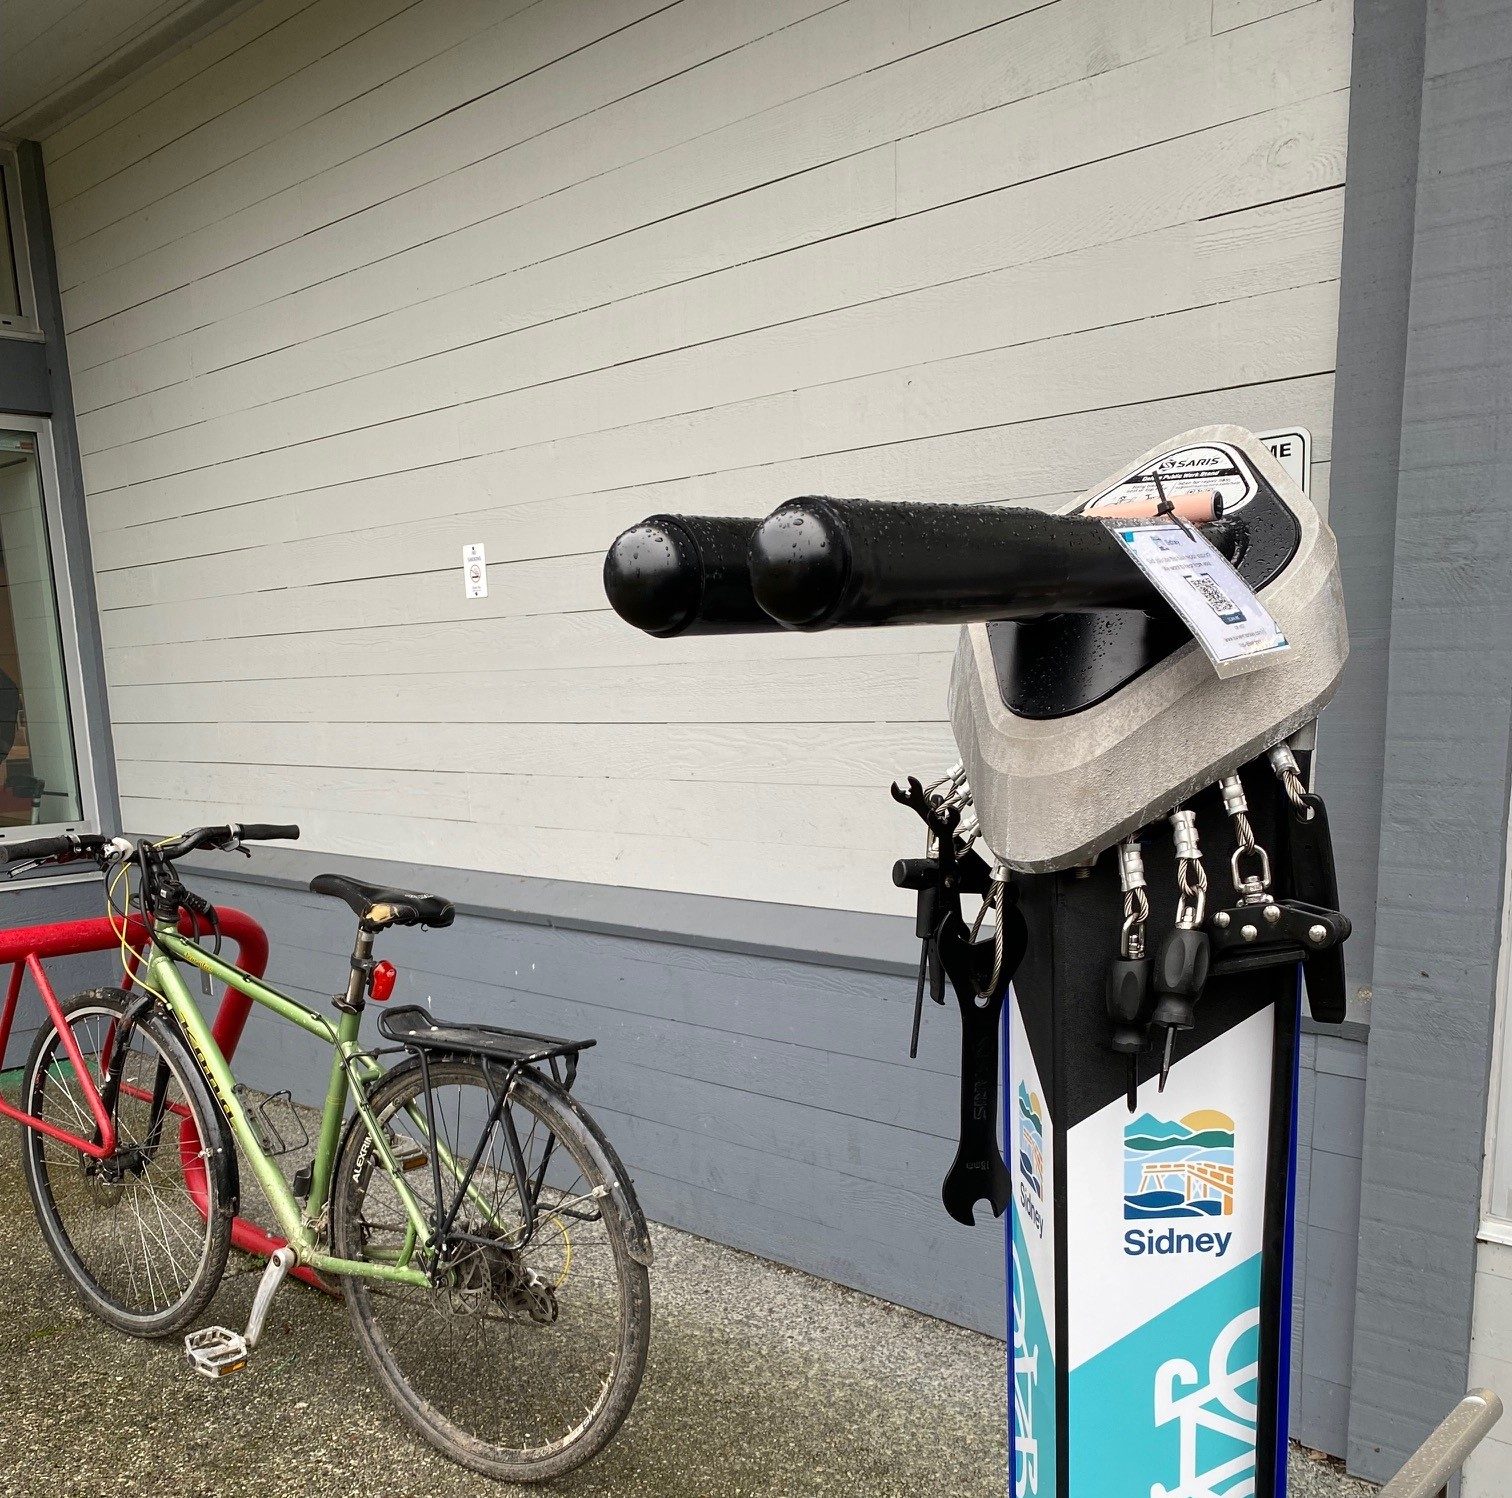 Bike repair station next to bike locked to bike rack.